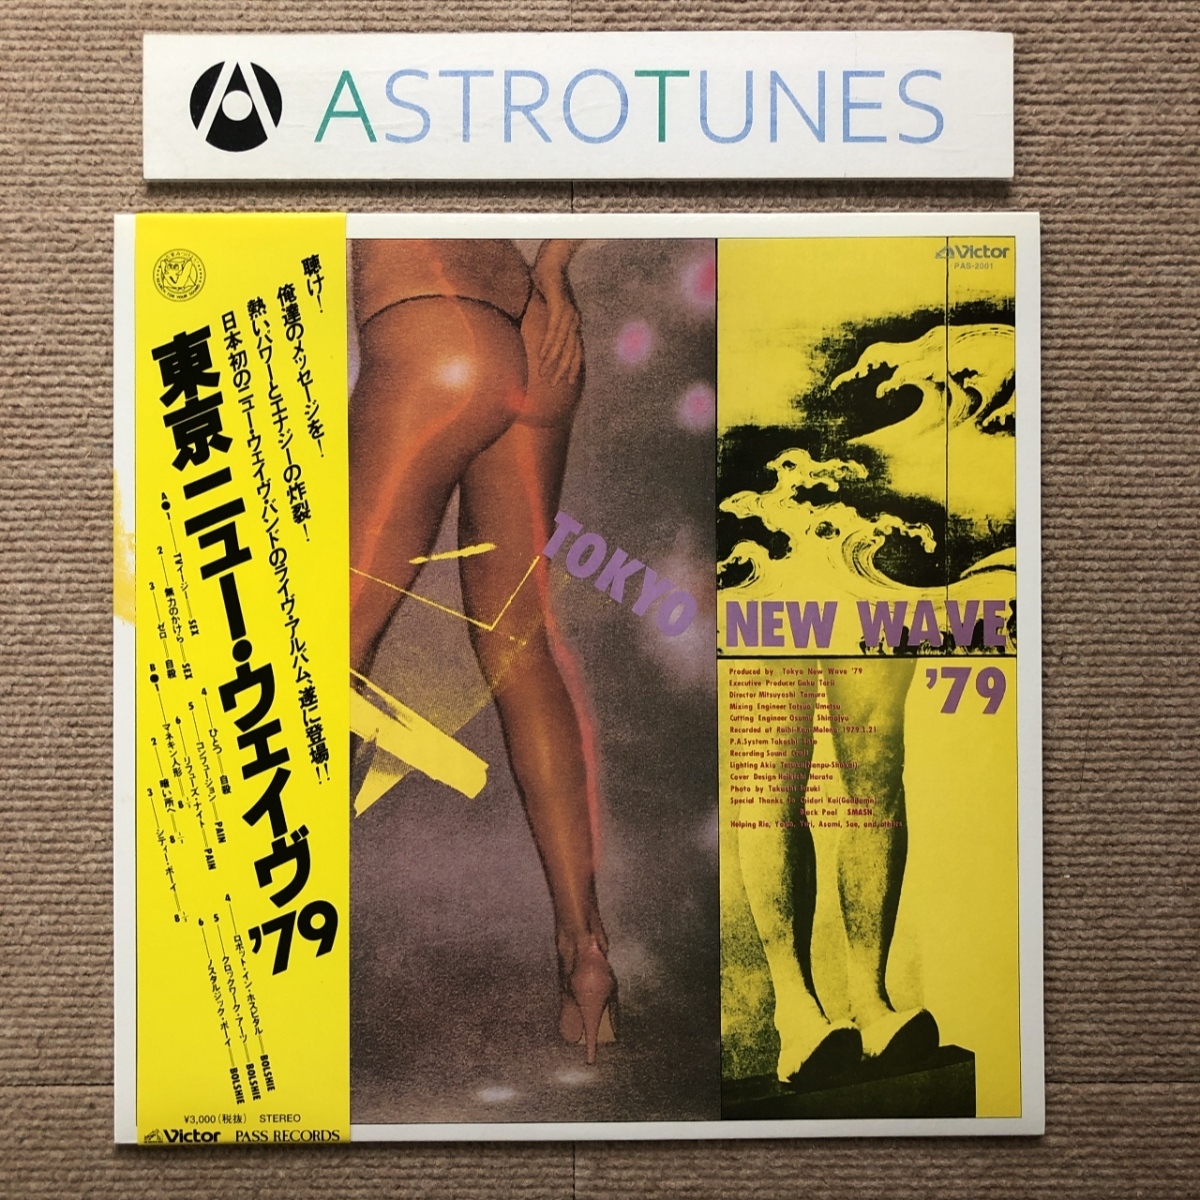 人気カラーの レア盤 ほぼ新品 美ジャケ 傷なし美盤 V.A. 自殺 Sex Pain 幻のライヴアルバム復刻版 帯付 '79 Wave New Tokyo LPレコード 2001年 オムニバス